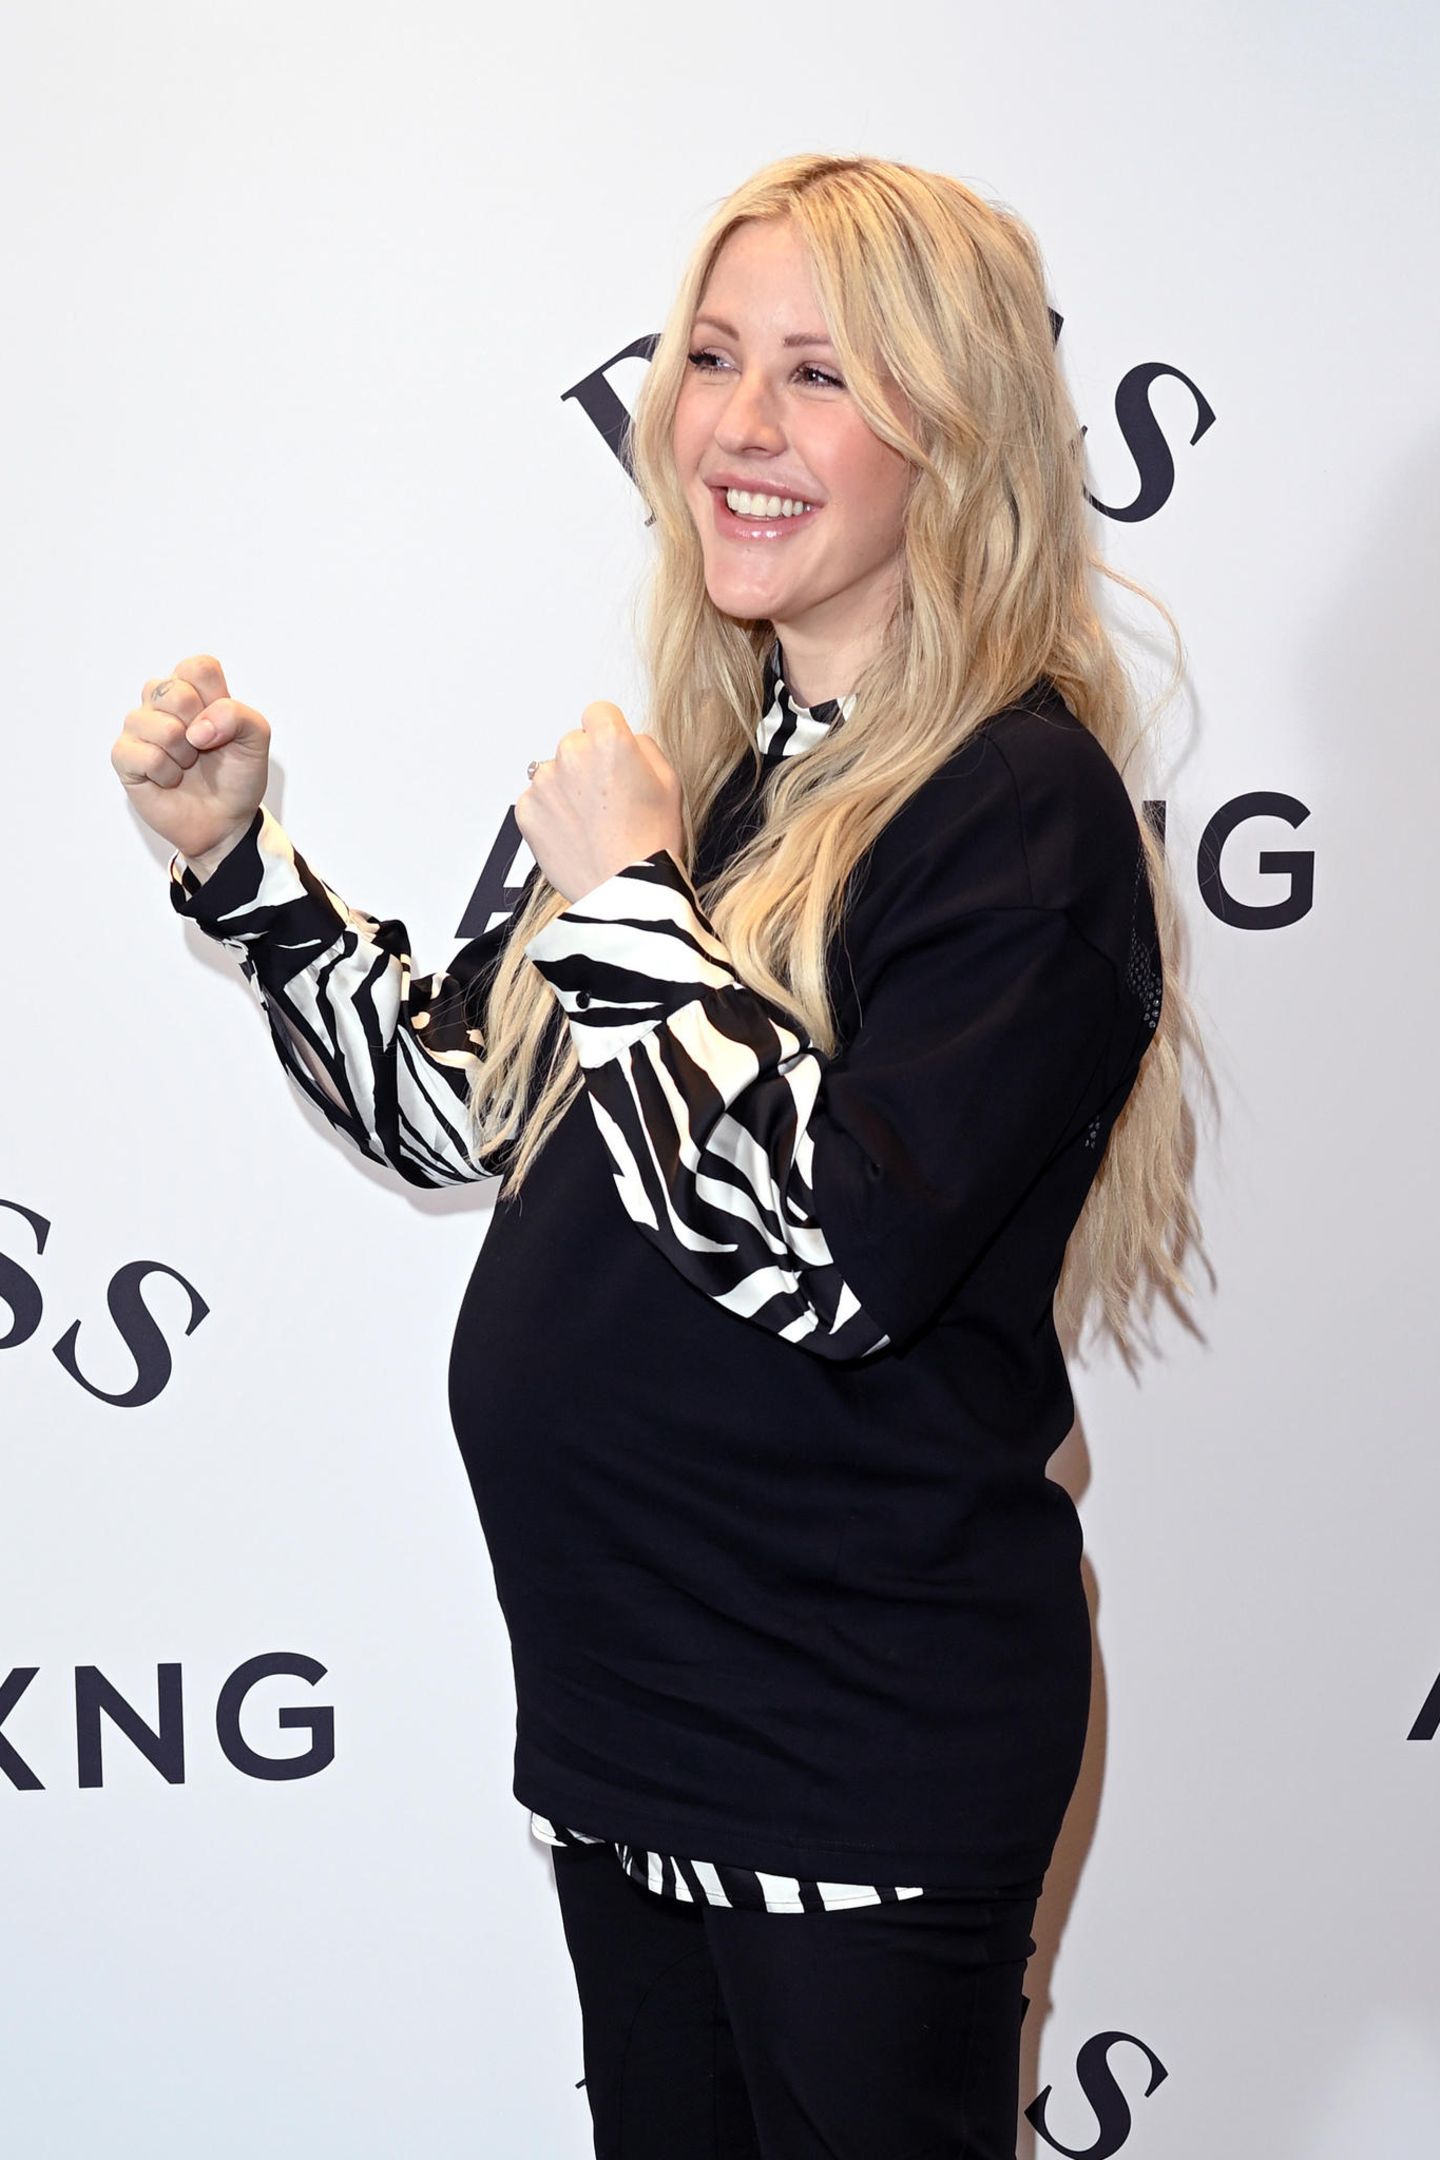 Die Baby-News kamen überraschend: Ellie Goulding hat am 24. Februar ihre Schwangerschaft bekannt gegeben und nun ihren ersten offiziellen Red-Carpet-Auftritt mit Babykugel absolviert. Anlässlich der BOSS x Anthony Joshua Kollektion zeigt sich die 34-Jährige in einem schwarzen Shirt unter dem sie eine Bluse im Zebra-Look trägt. Die Sängerin ist bereits im 8. Monat schwanger – und von der Seite ist der Bauch ganz deutlich zu erkennen. Ebenfalls nicht zu übersehen: Das großartige Strahlen der Londonerin. 